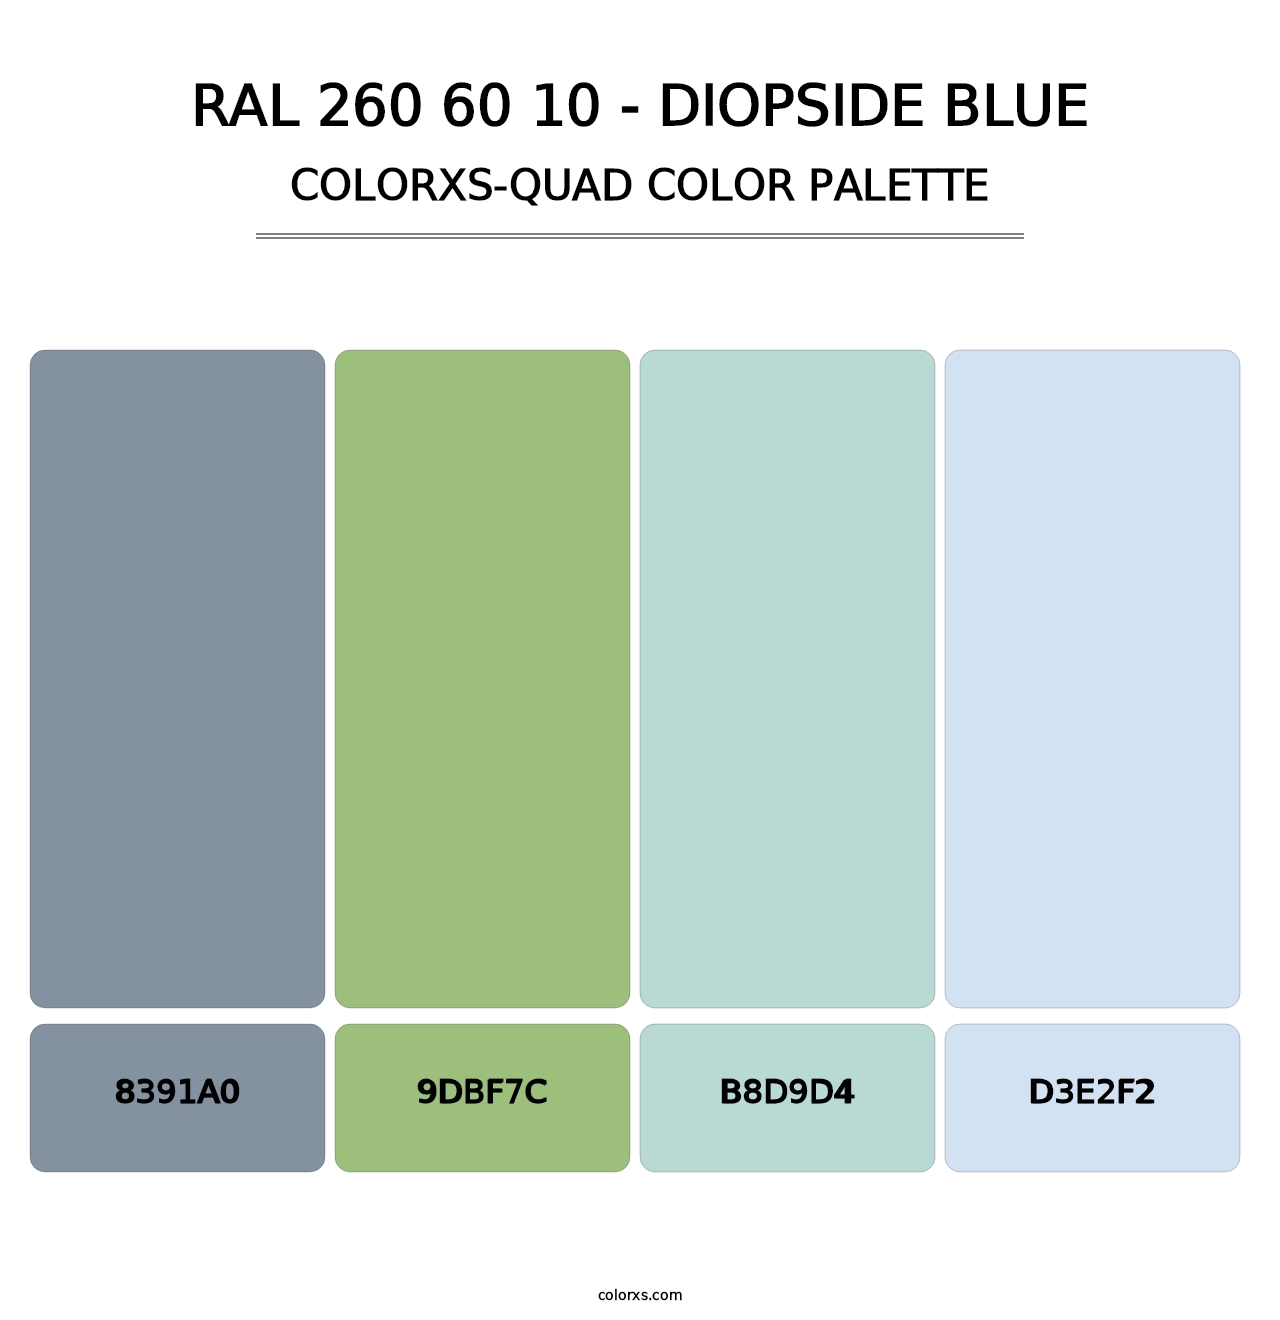 RAL 260 60 10 - Diopside Blue - Colorxs Quad Palette